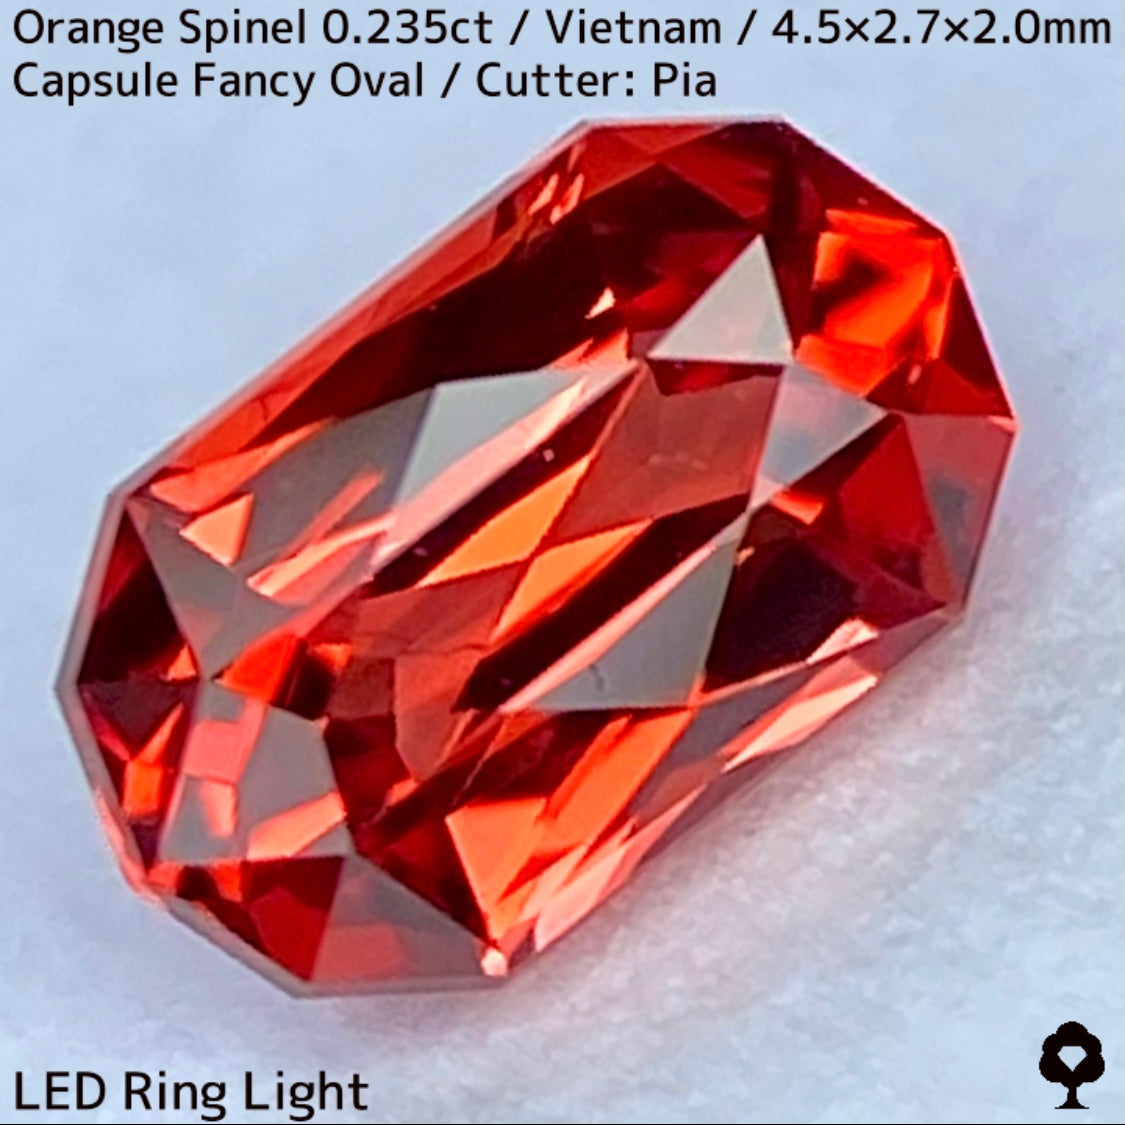 ベトナム産オレンジスピネル0.235ct★超美結晶のカプセルシザースから強烈オレンジネオンの煌めき